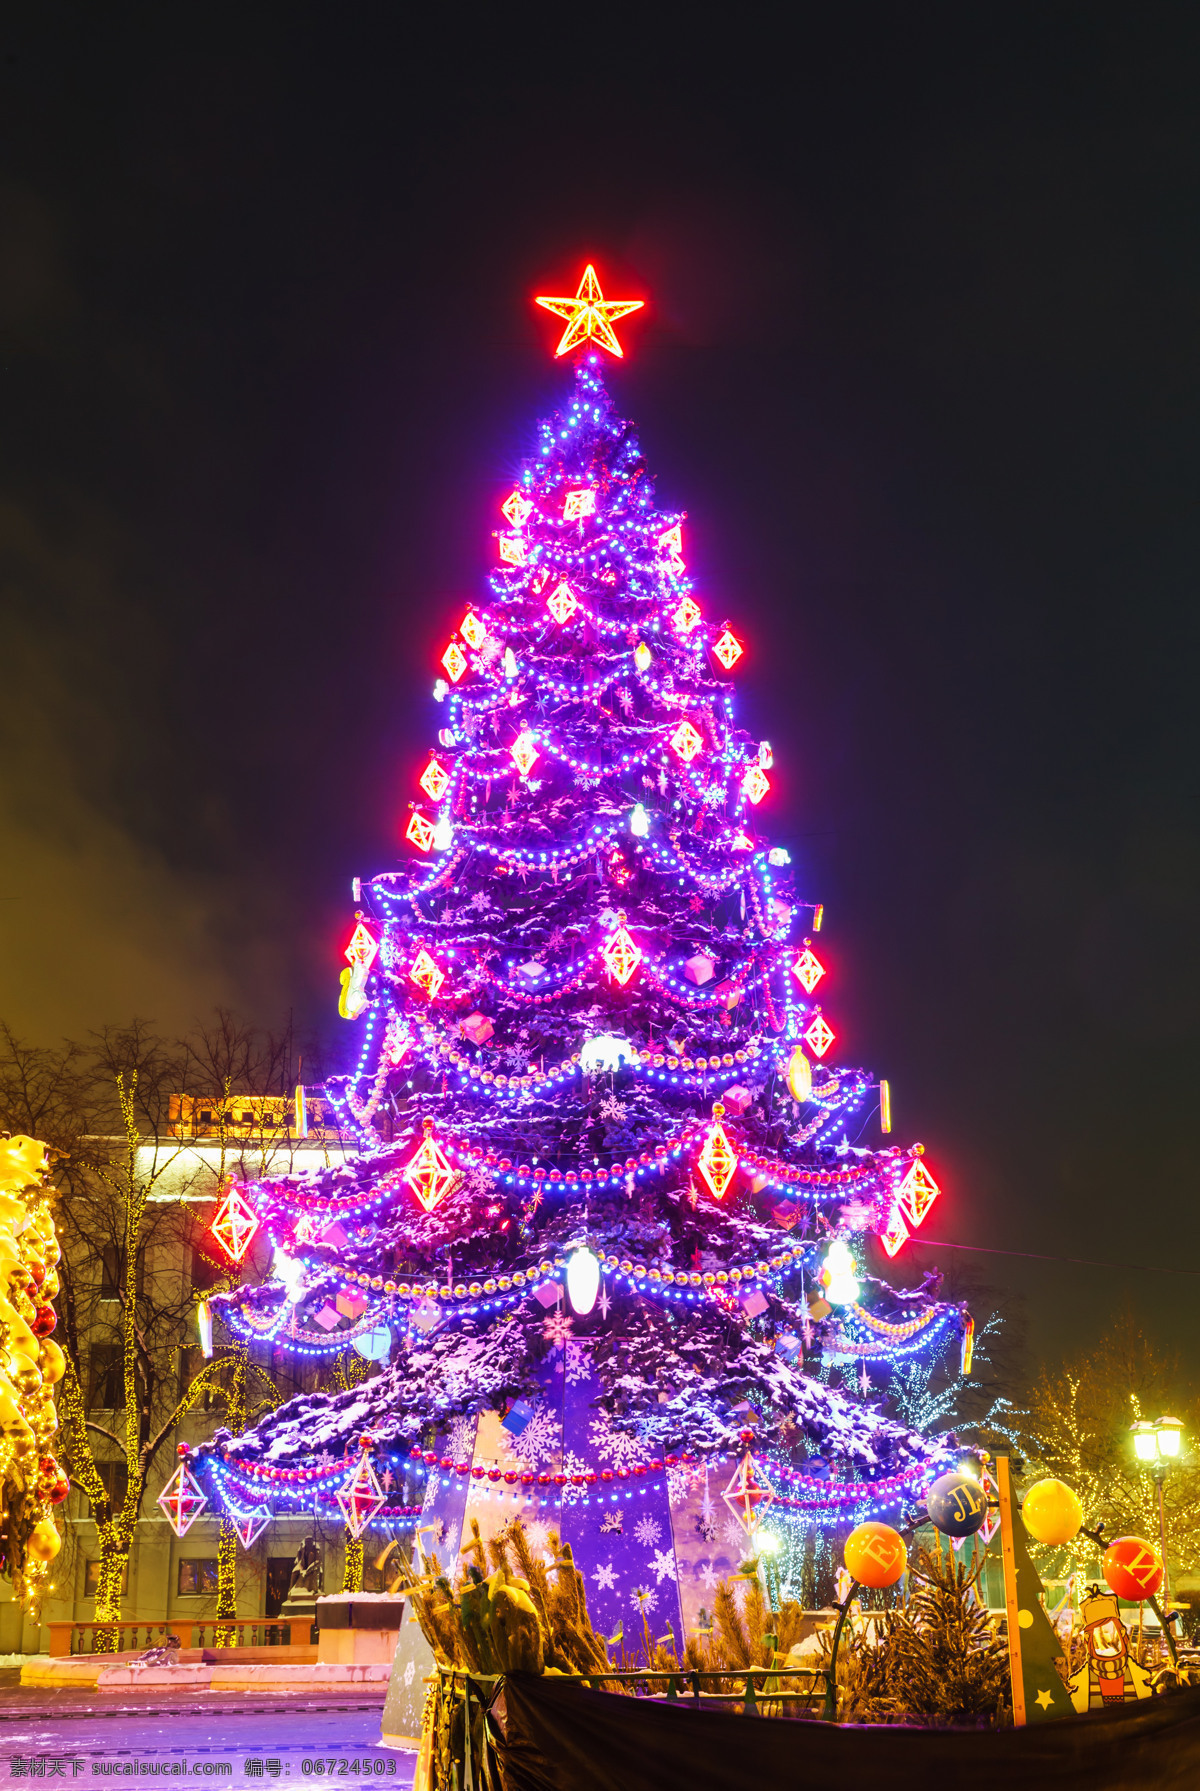 圣诞树 夜景 圣诞节 城市 风景 灯饰 新年快乐 圣诞节氛围 美丽风景 城市夜景 美丽景色 城市风光 环境家居